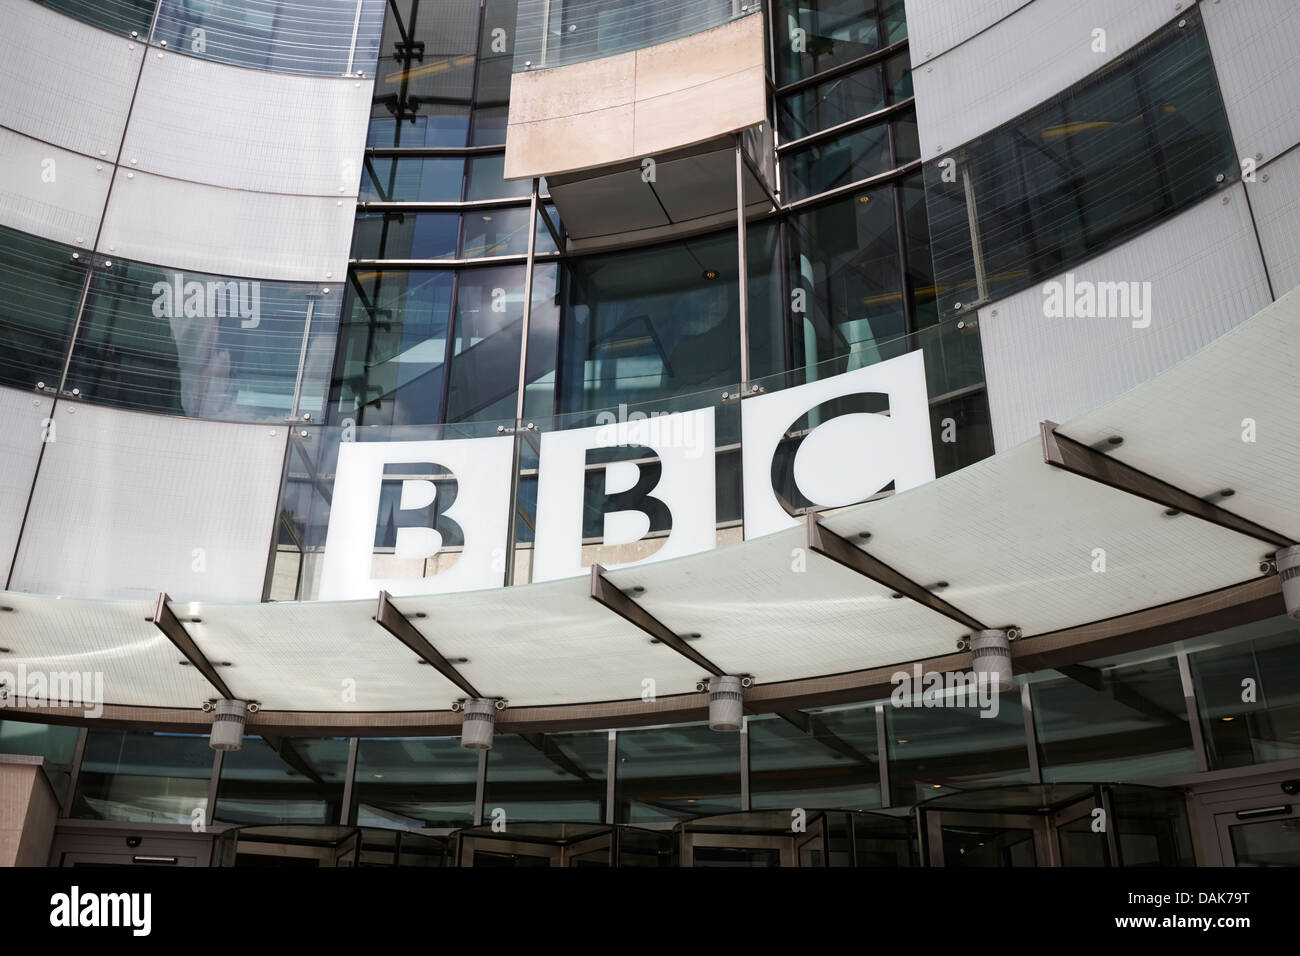 new bbc broadcasting house london, england uk Stock Photo